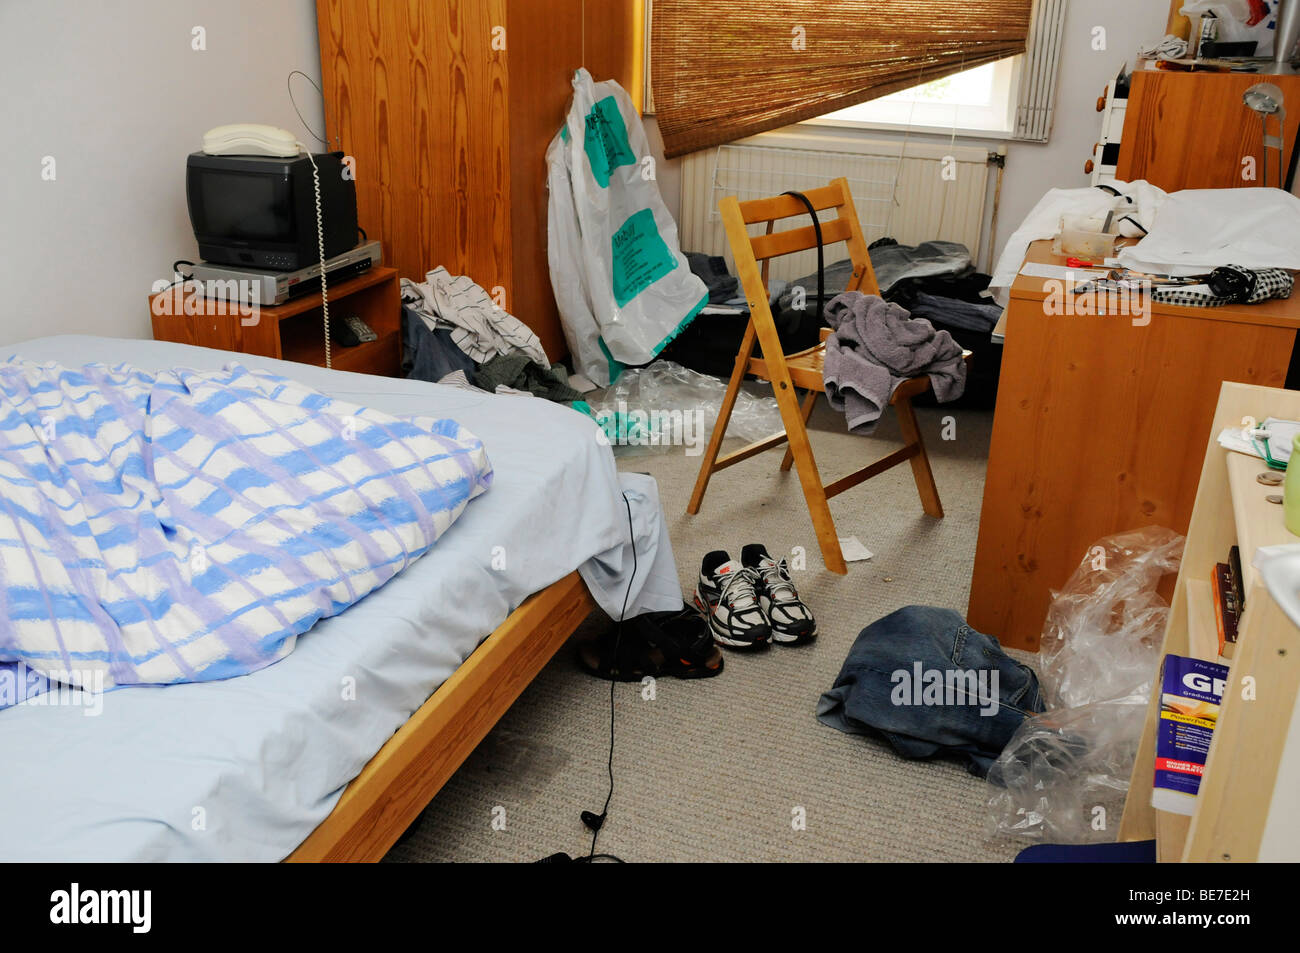 Unordentlich, unübersichtlich Schlafzimmer in Unordnung, chaotisch Bed  jungen Zimmer Stockfotografie - Alamy